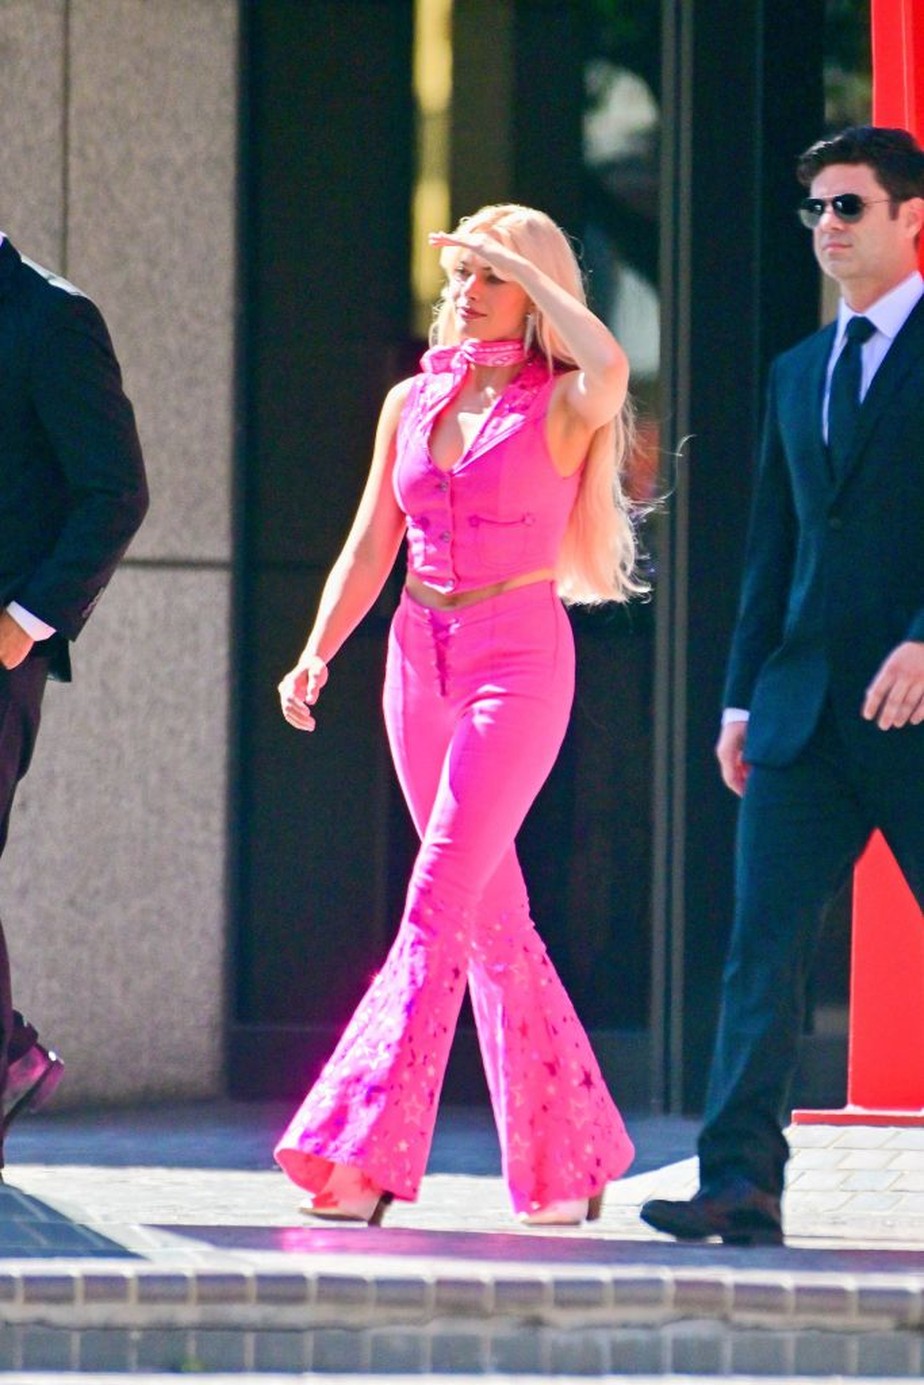 Barbie mania: 5 looks cor de rosa para se vestir como a boneca mais famosa  do mundo